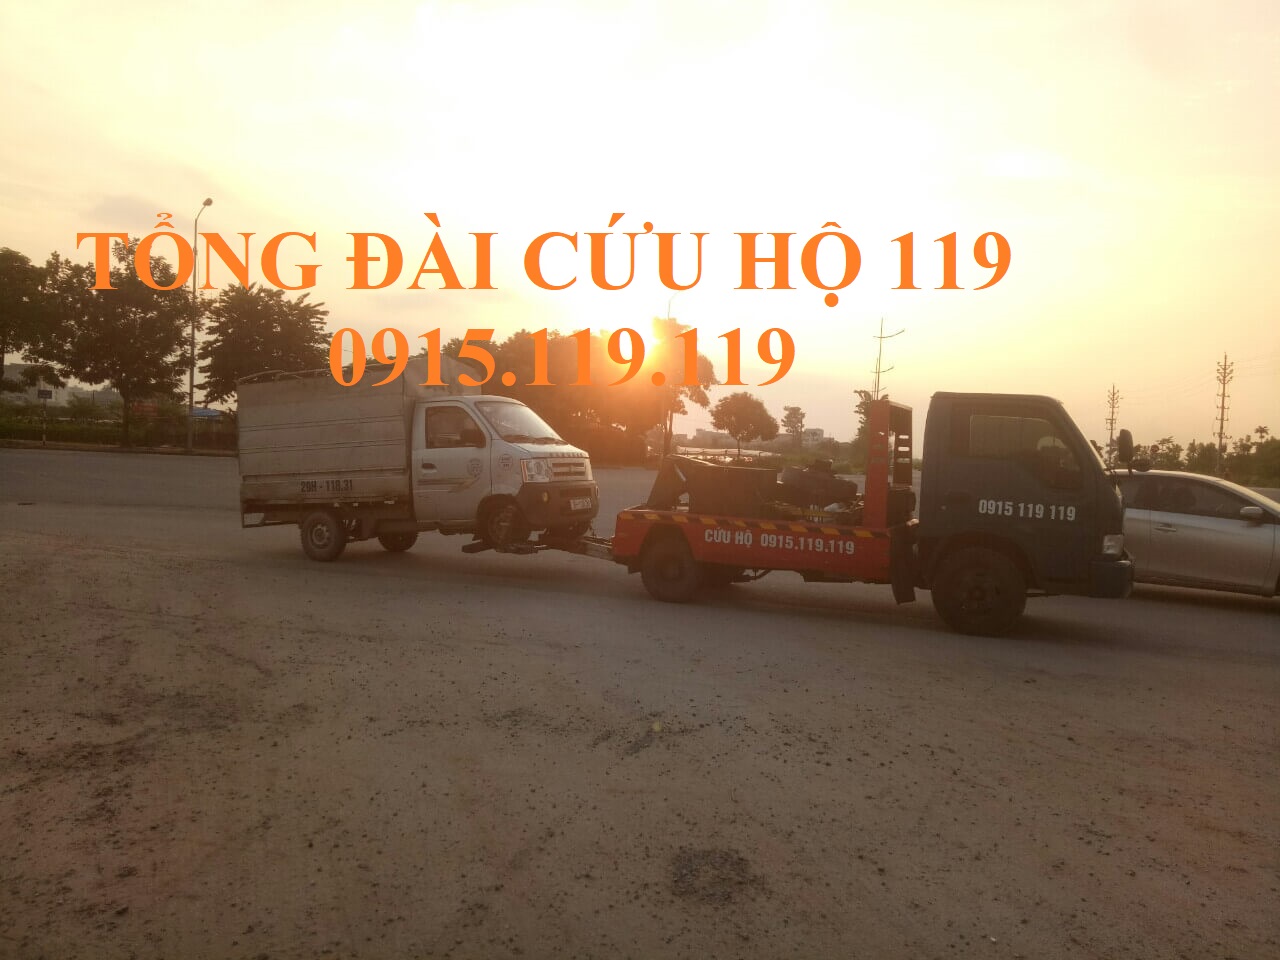 Cứu hộ cao tốc Hà Nội Lào Cai, cứu hộ cao tốc Nội Bài Lào Cai, Xe cứu hộ cao tốc Hà Nội Lào Cai Yên Bái uy tín